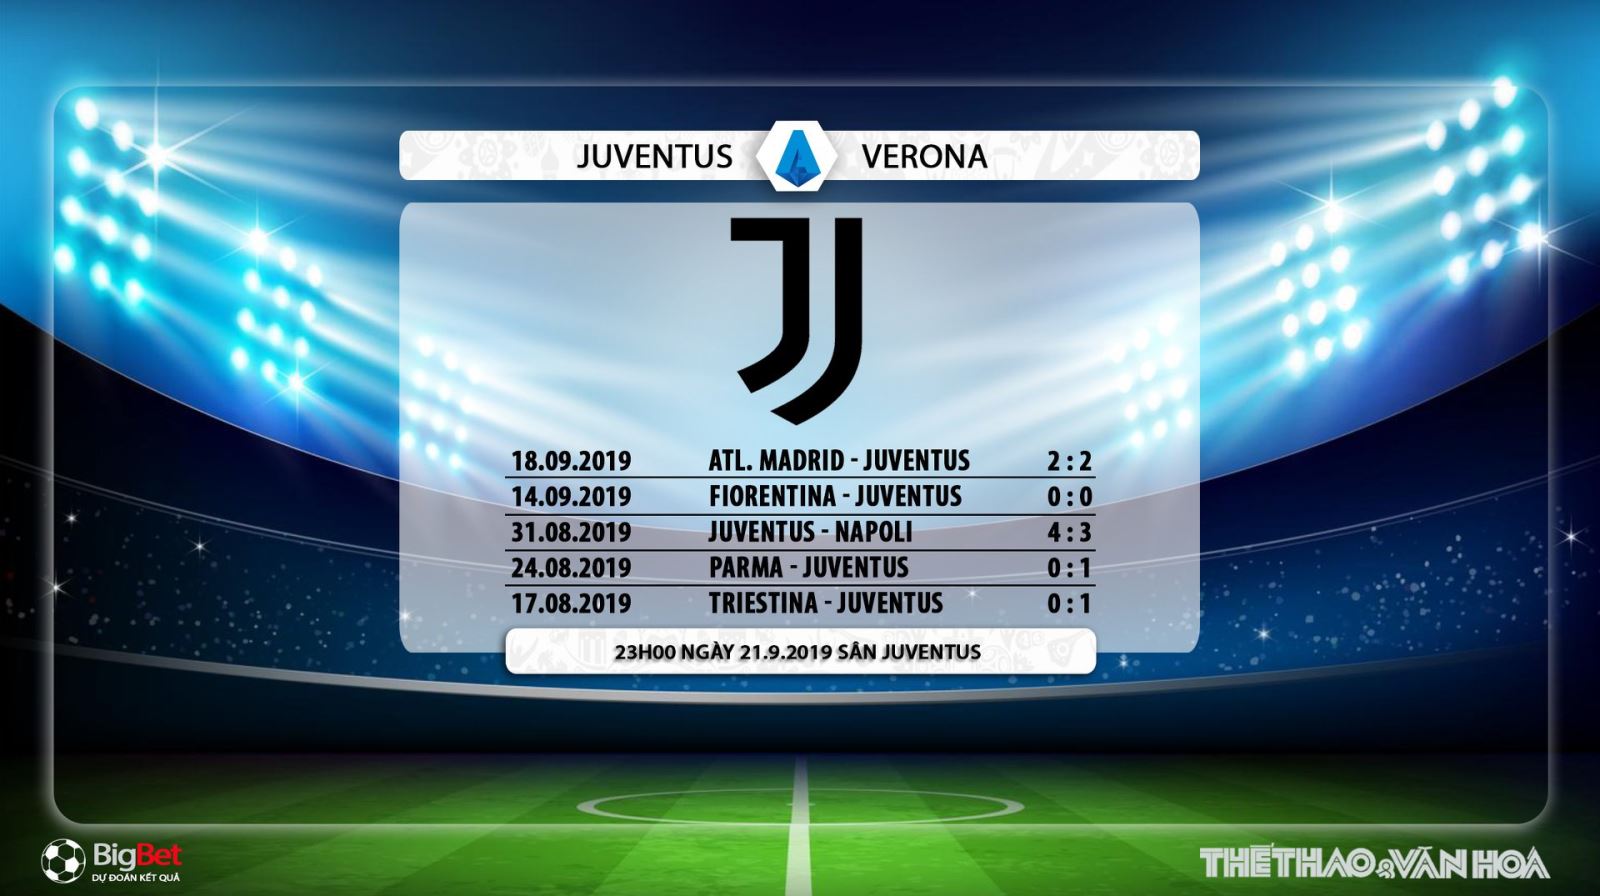 truc tiep bong da hôm nay, FPT play, Juventus đấu với Verona, trực tiếp bóng đá, Juventus vs Verona, soi keo bong da, Juventus, xem bóng đá trực tiếp, Serie A